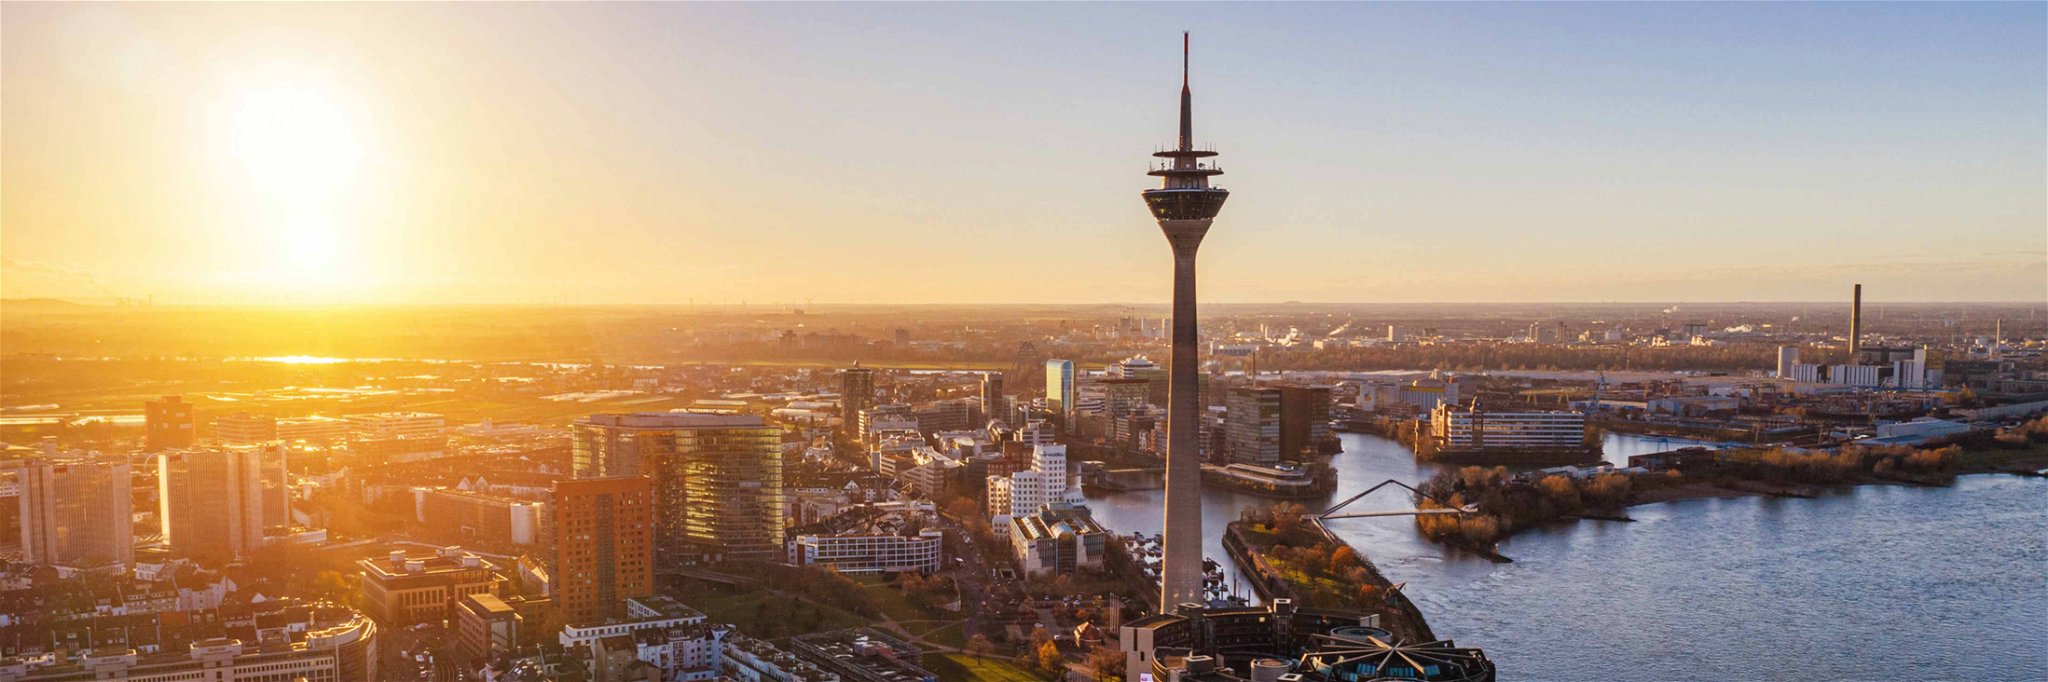 Düsseldorf am Rhein zählt deutschlandweit zu den Städten mit der höchsten Lebensqualität.&nbsp;